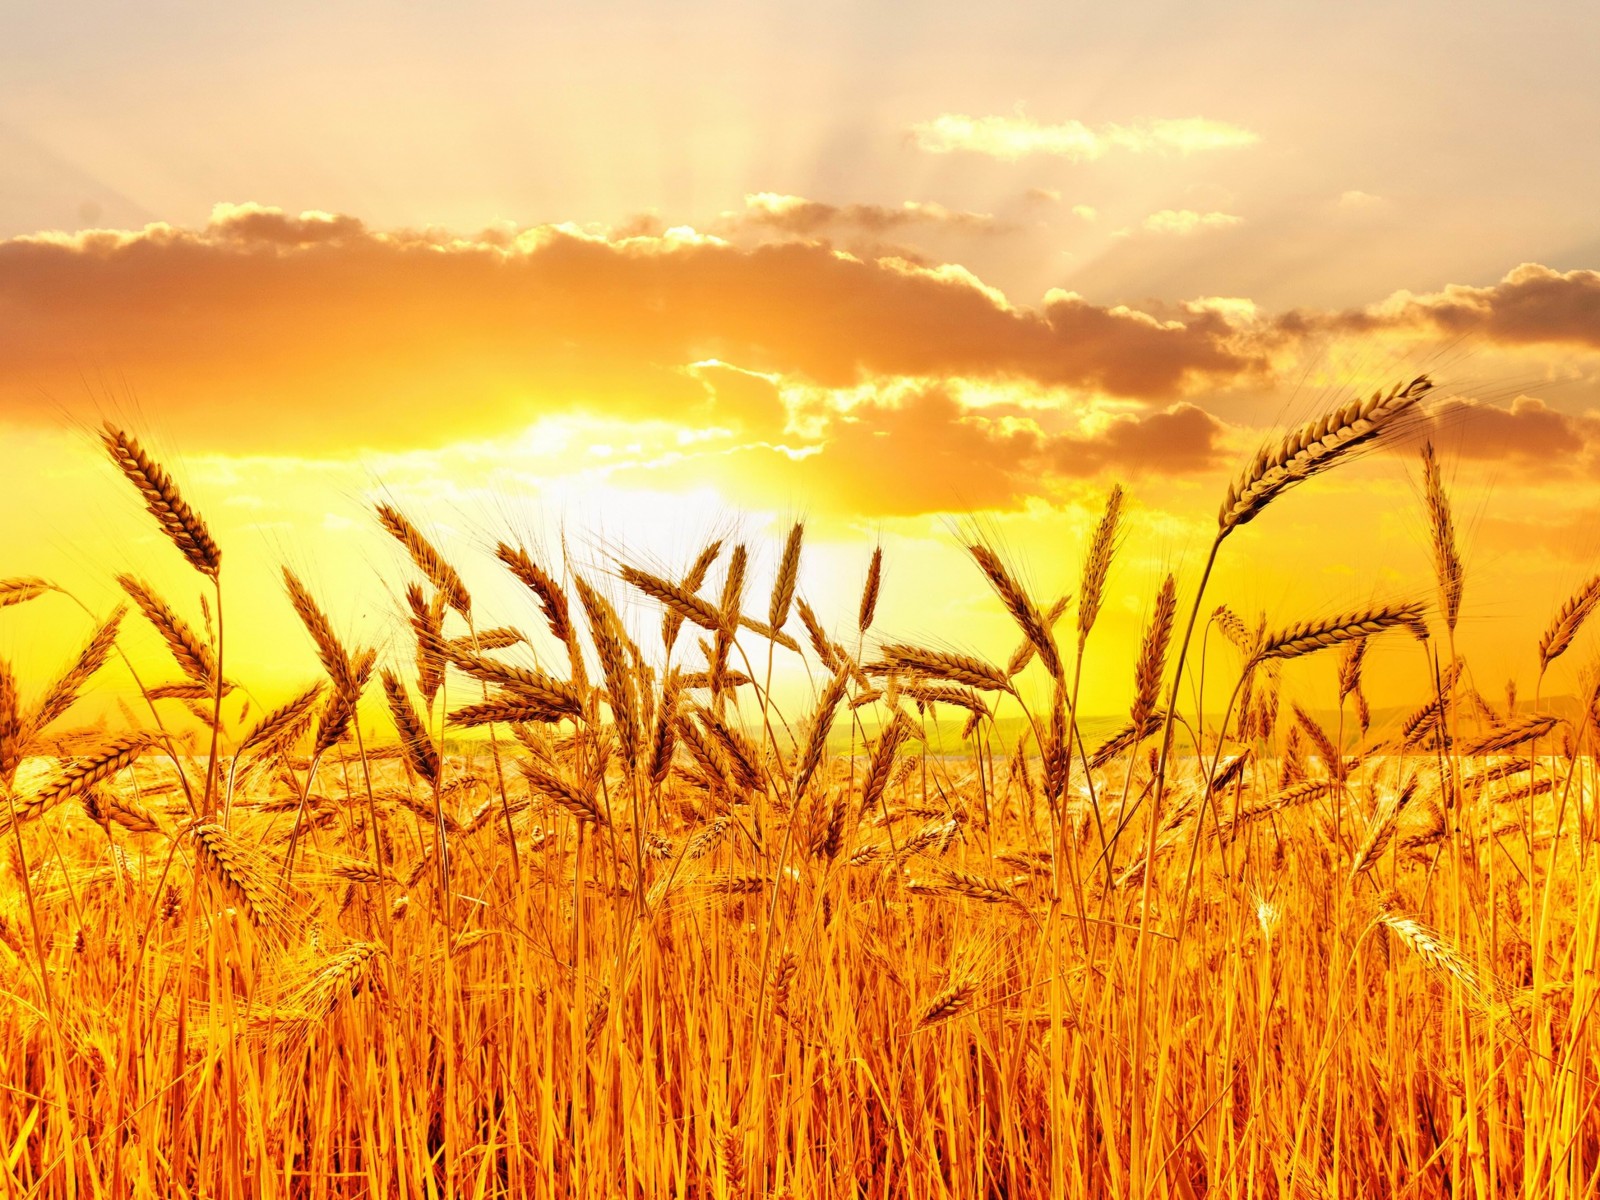 Golden Wheat Field At Sunset Wallpaper for Desktop 1600x1200